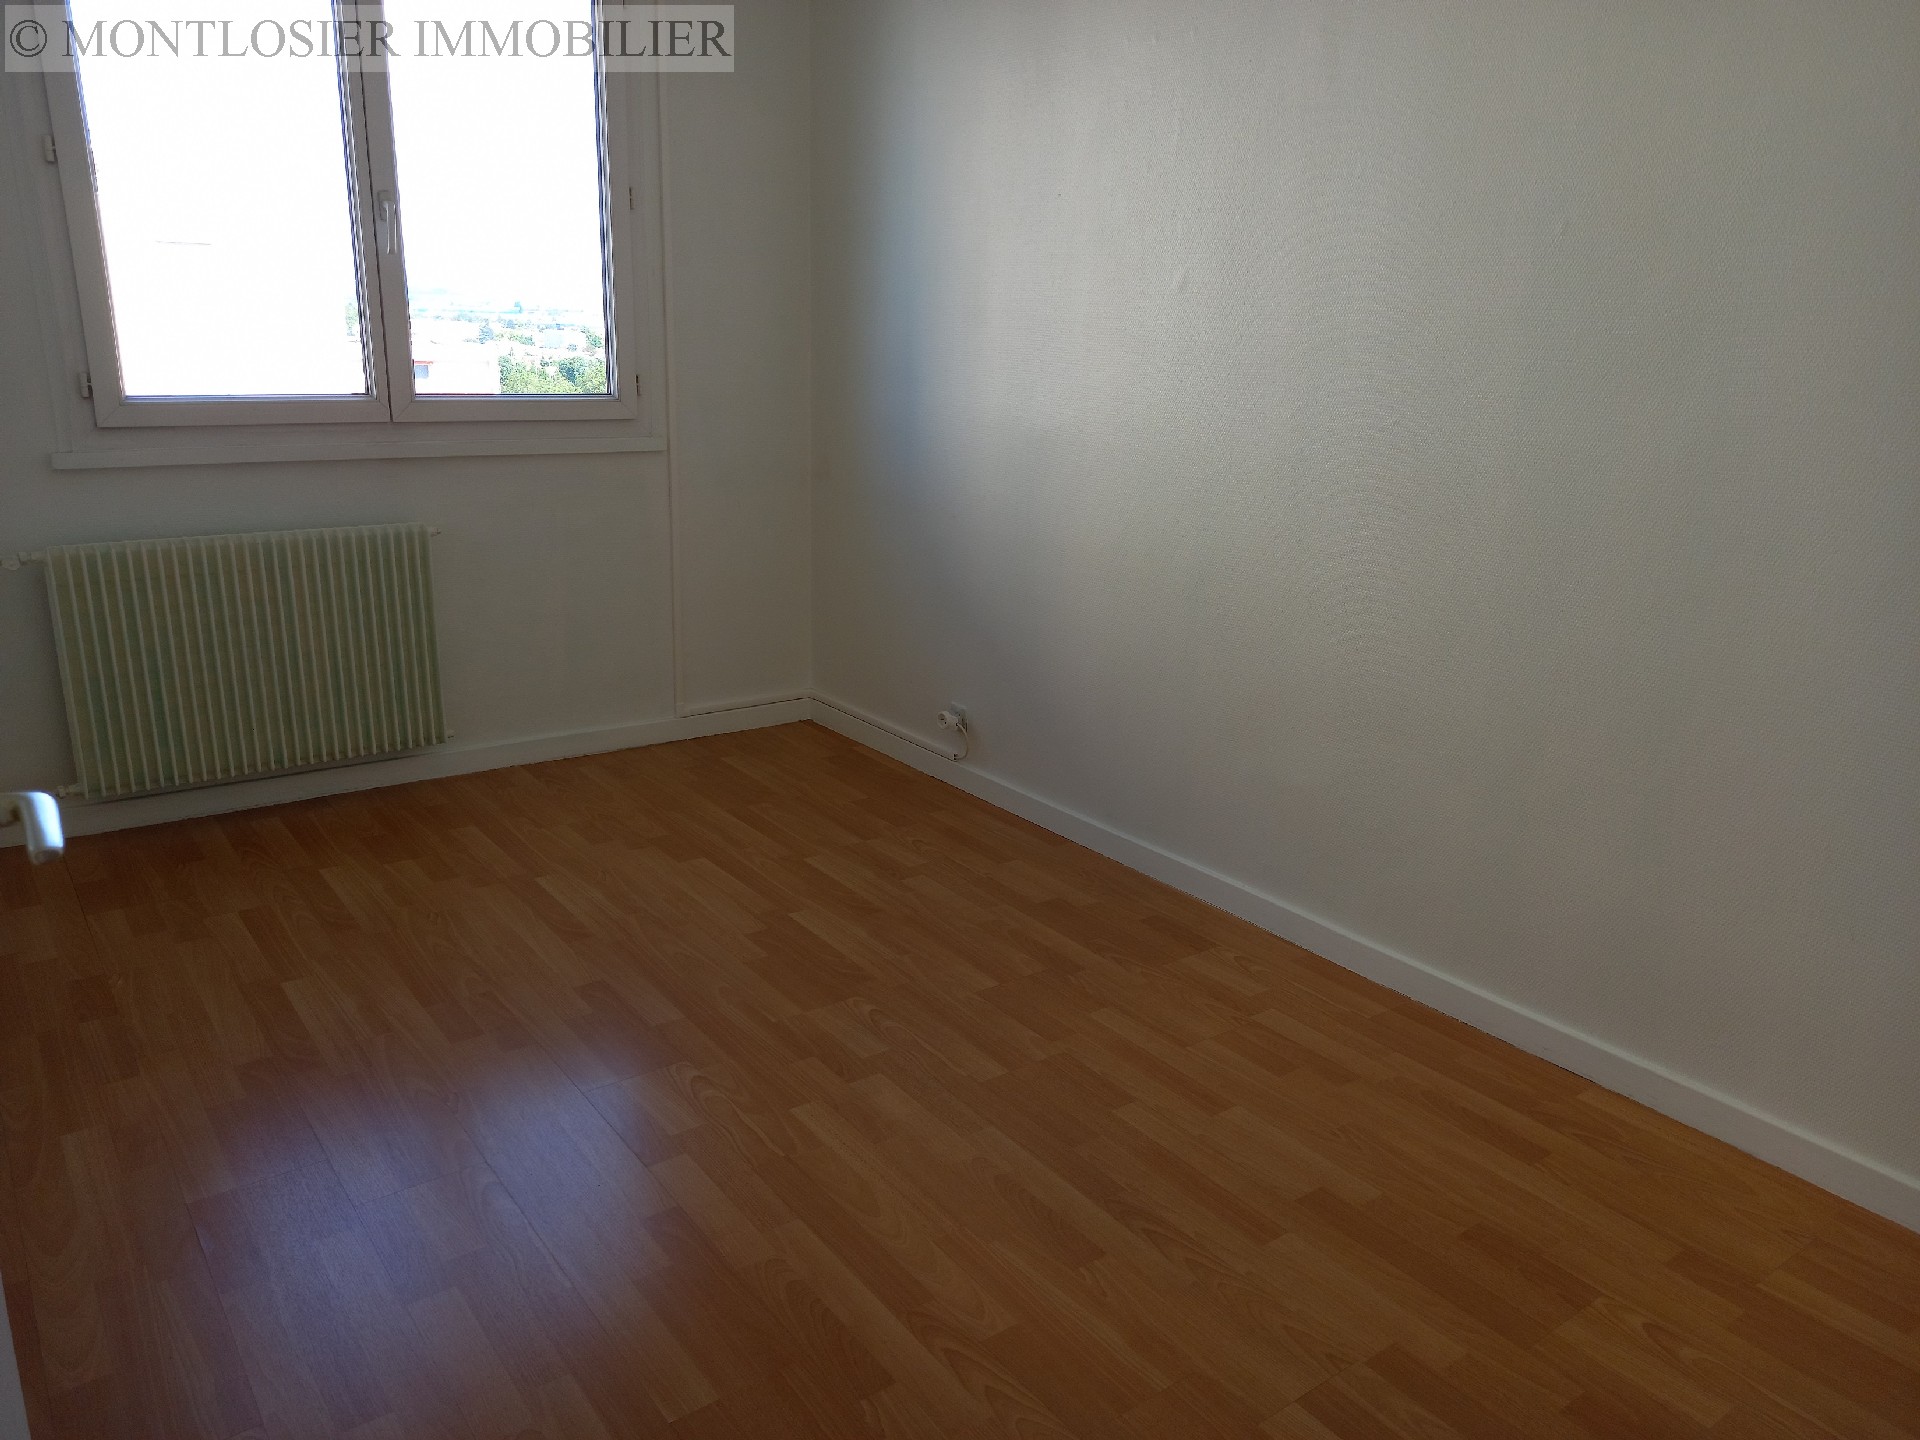 Appartement à vendre, CLERMONT-FERRAND, 66,71 m², 3 pièces